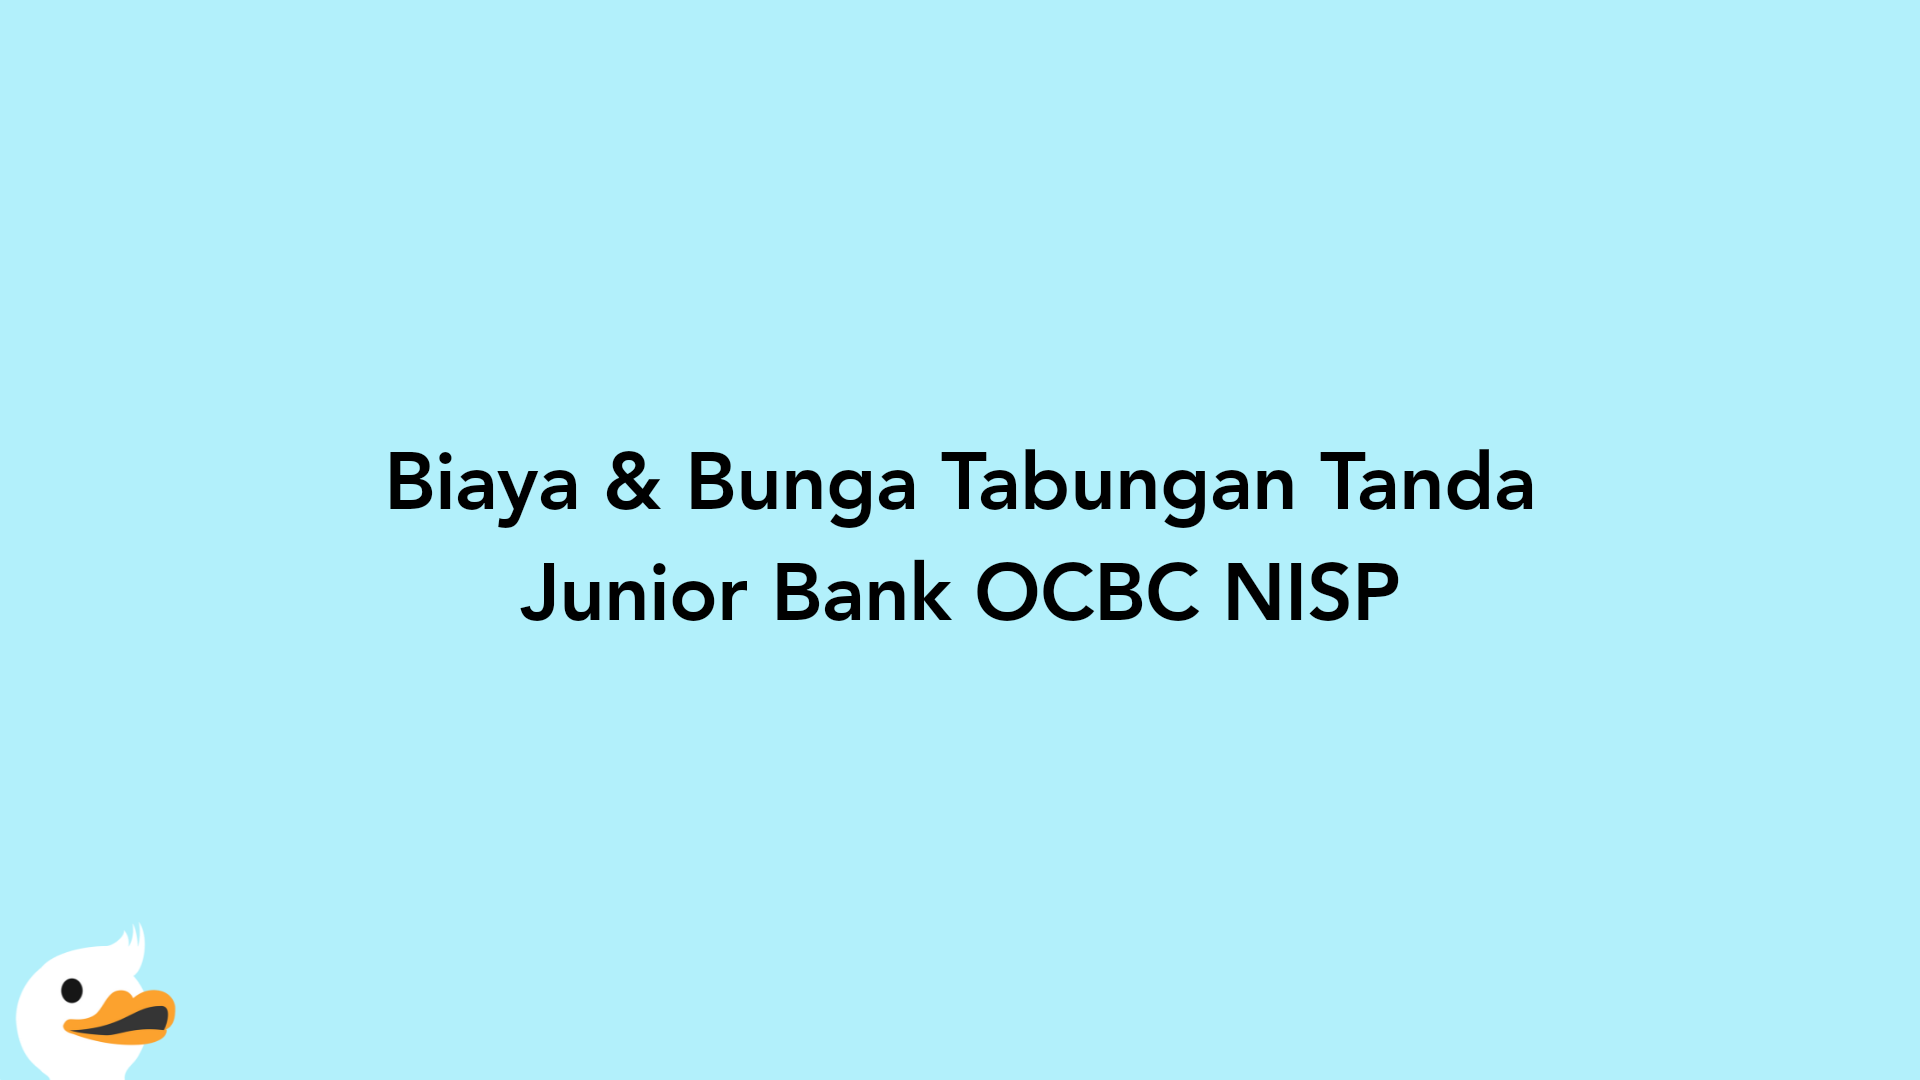 Biaya & Bunga Tabungan Tanda Junior Bank OCBC NISP